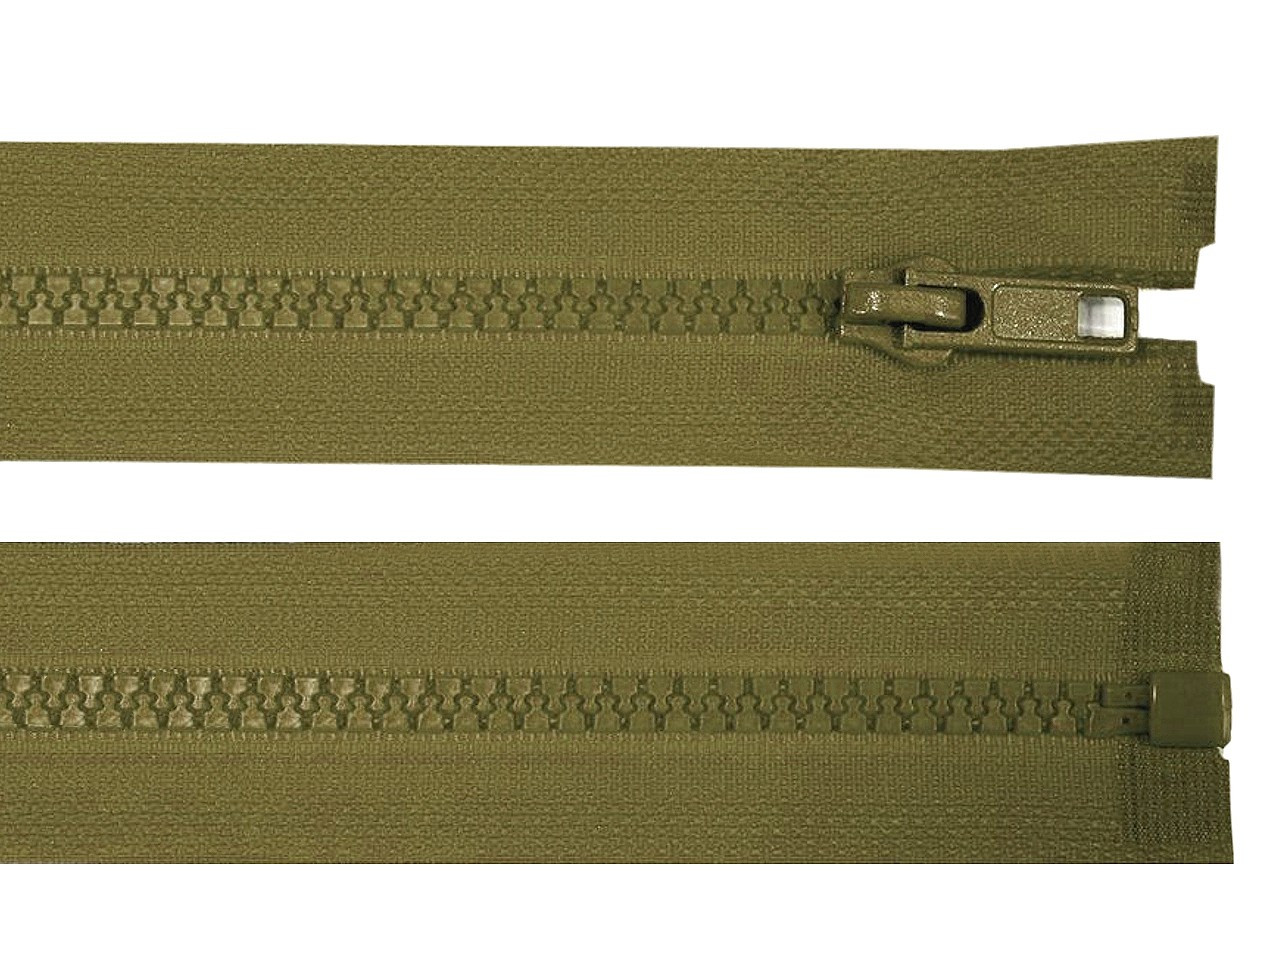 Kostěný zip šíře 5 mm délka 80 cm bundový, barva 298 zelená khaki tmavá